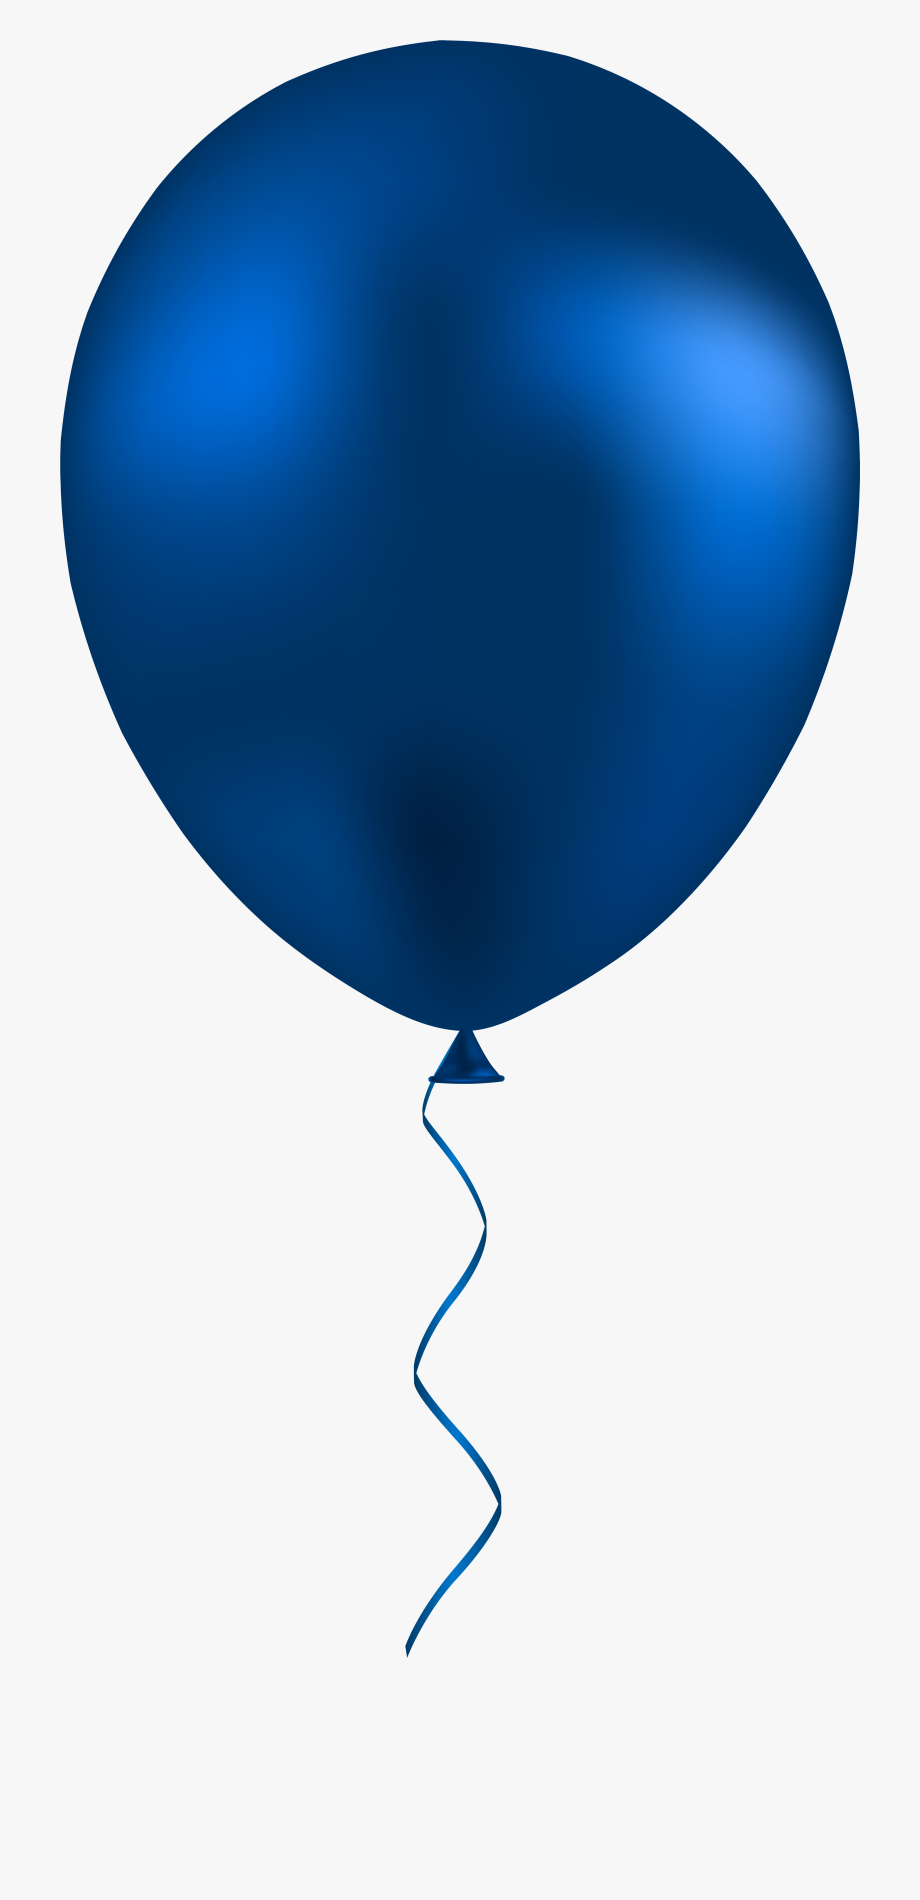 ballon clipart blue